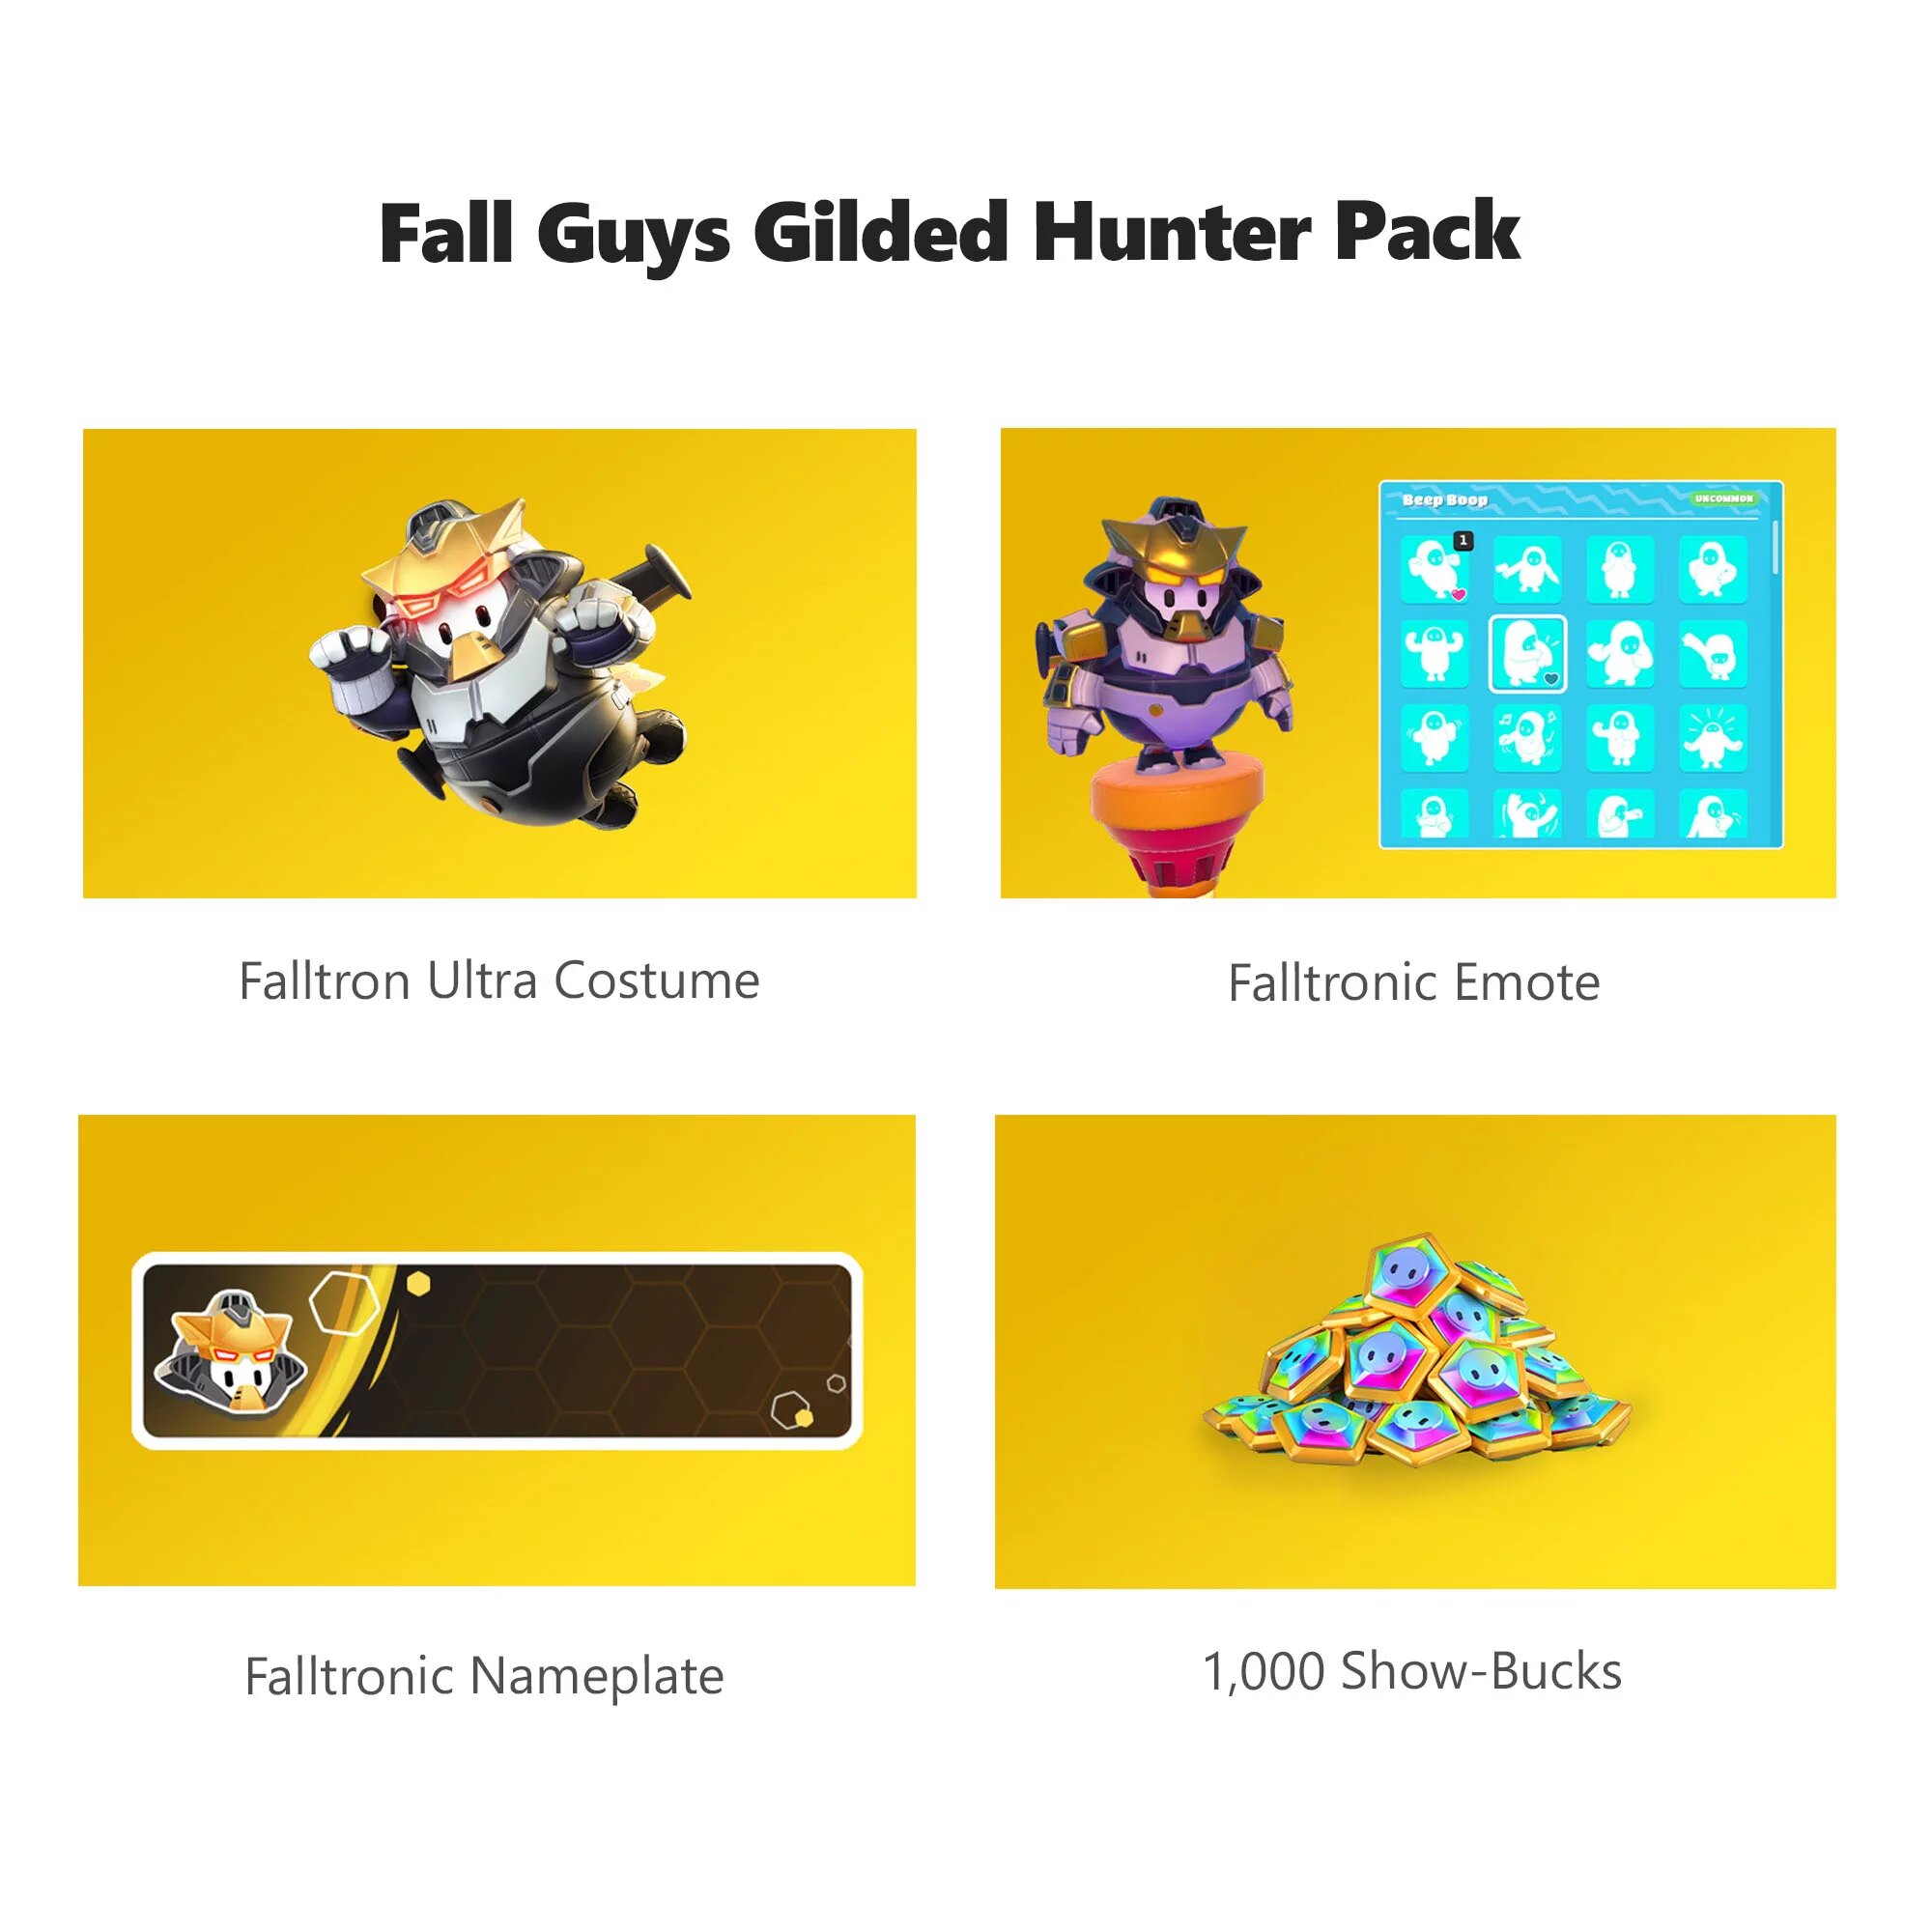 Fall Guys Gilded Hunter Pack